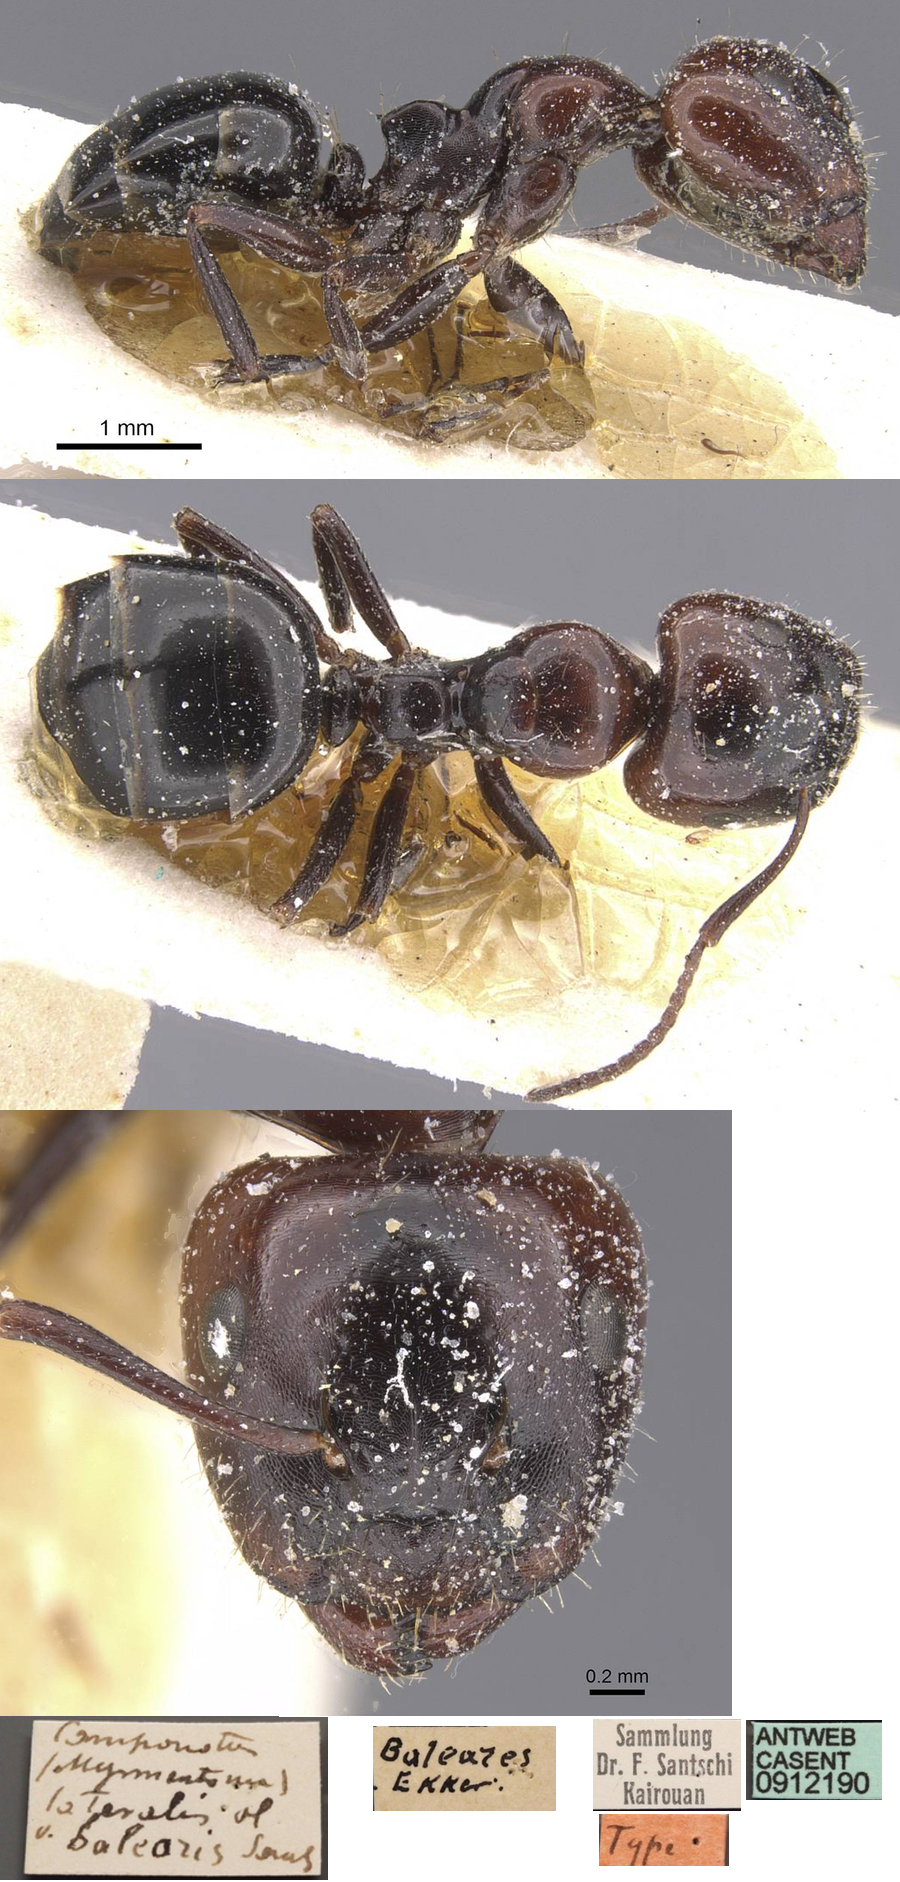 Camponotus lateralis major